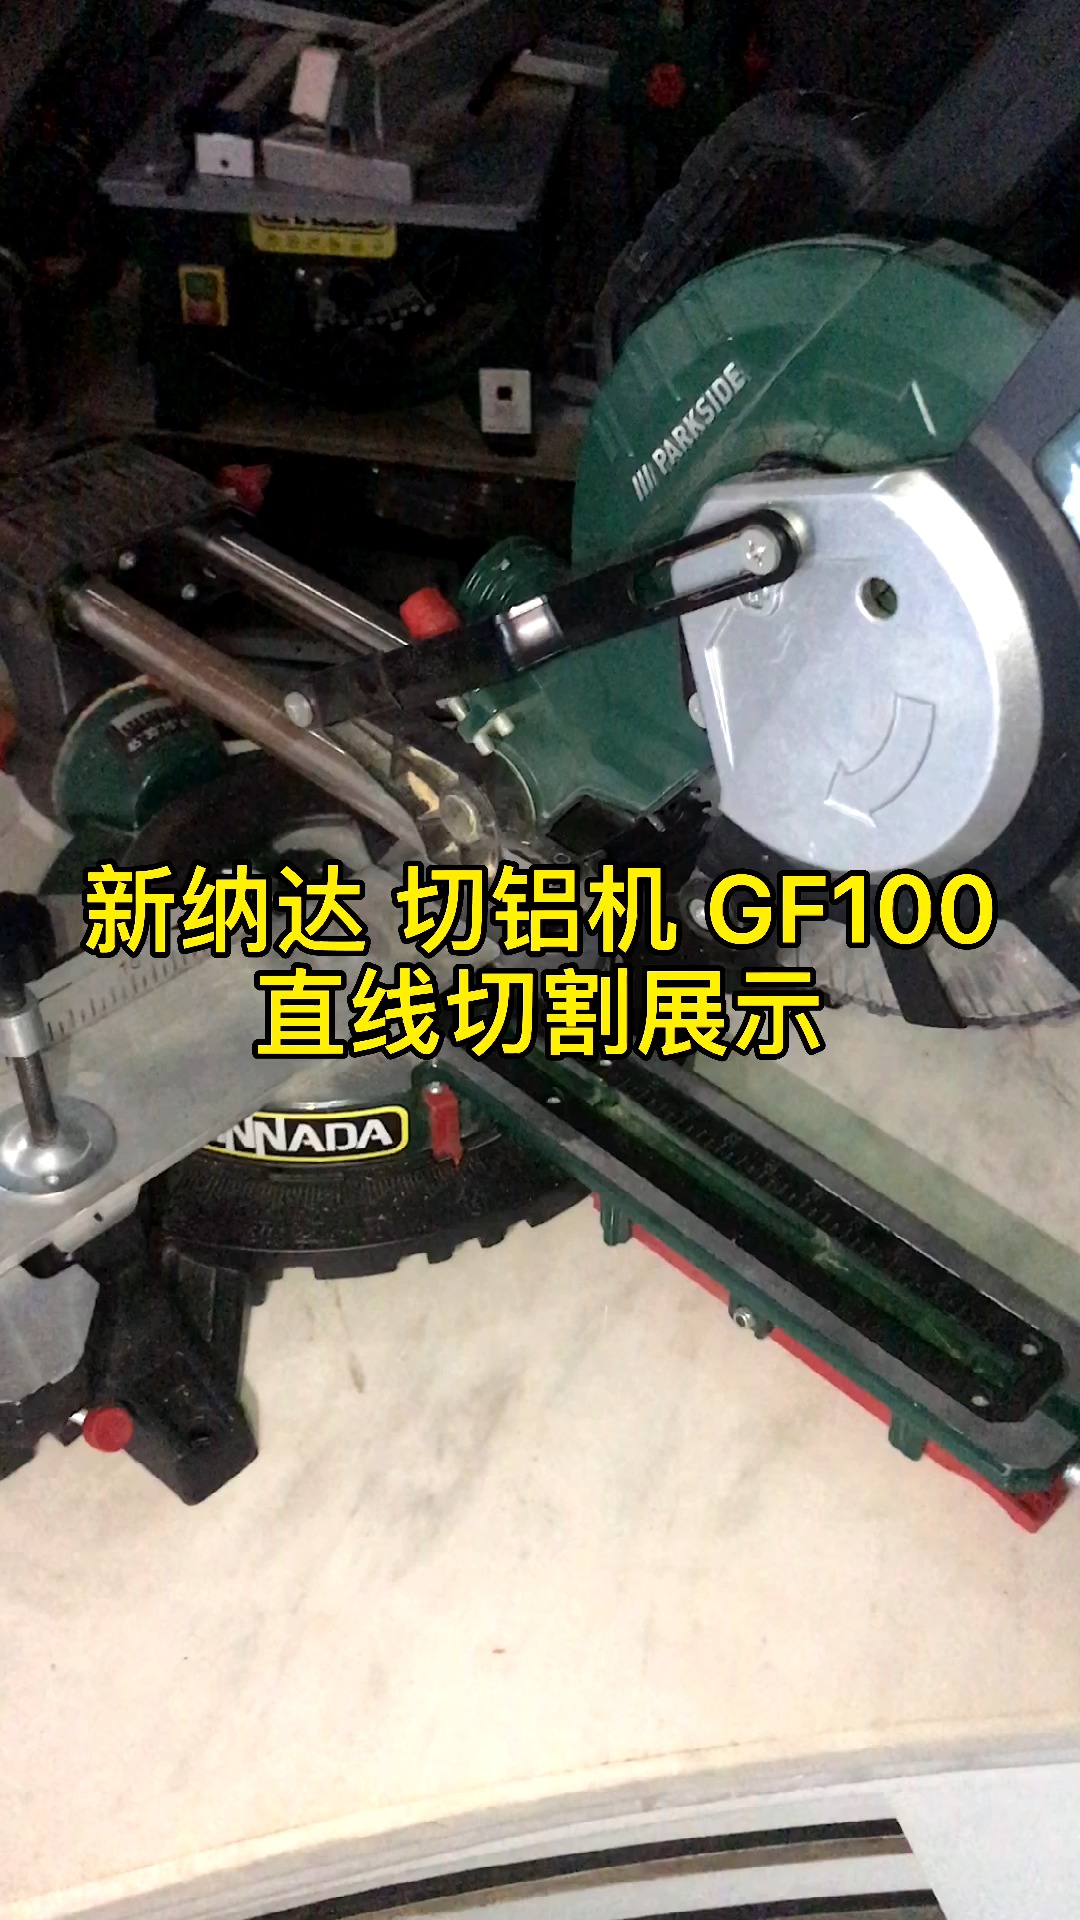 看木工拉杆锯哪个牌子好西藏山南市新纳达gf100铝合金